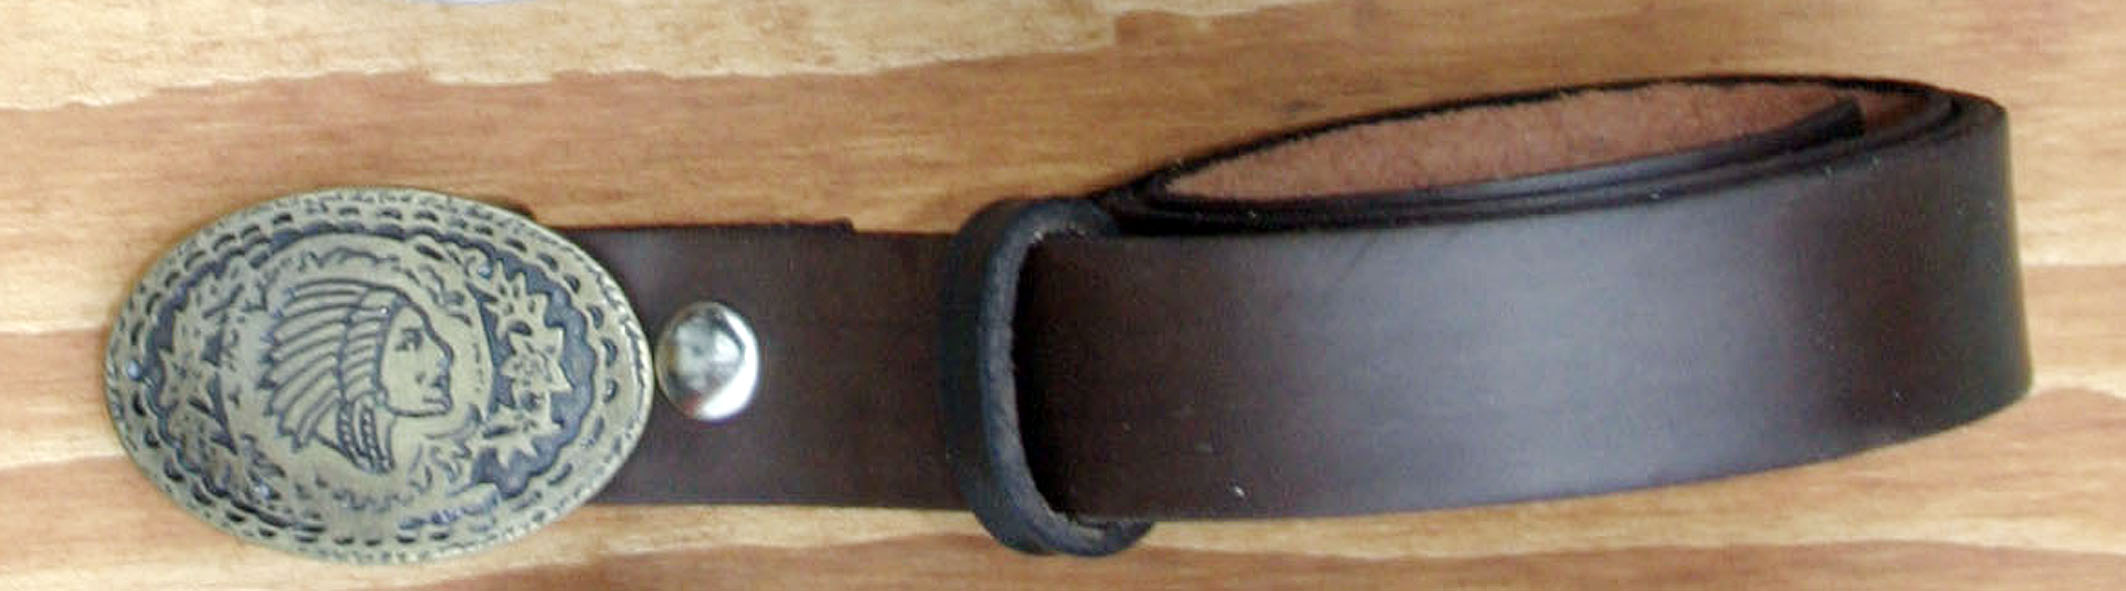 Cintura da Bambino  da 3 Cm. in  Pelle Morbida.